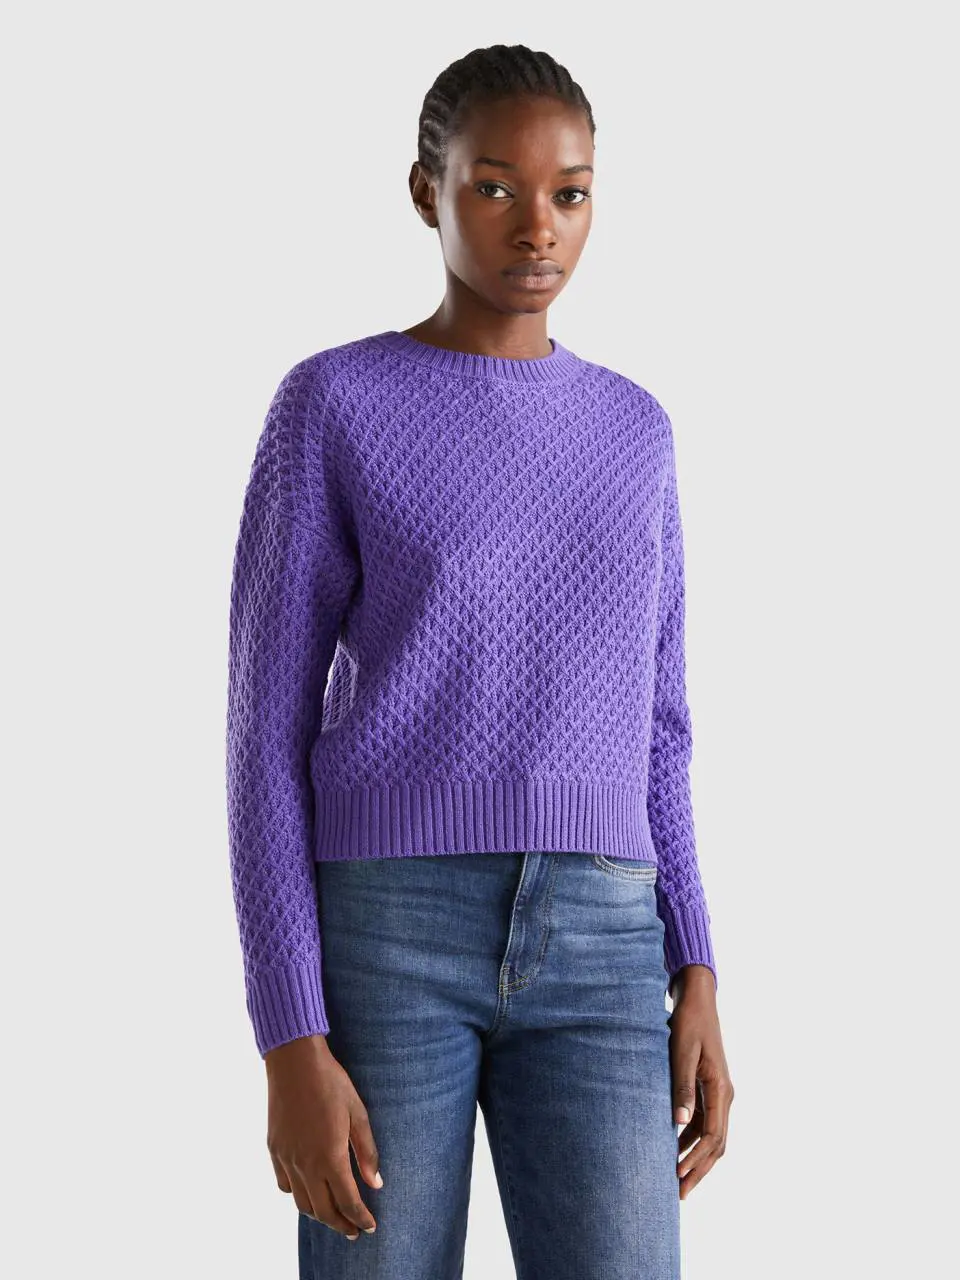 Benetton boxy fit knit sweater. 1